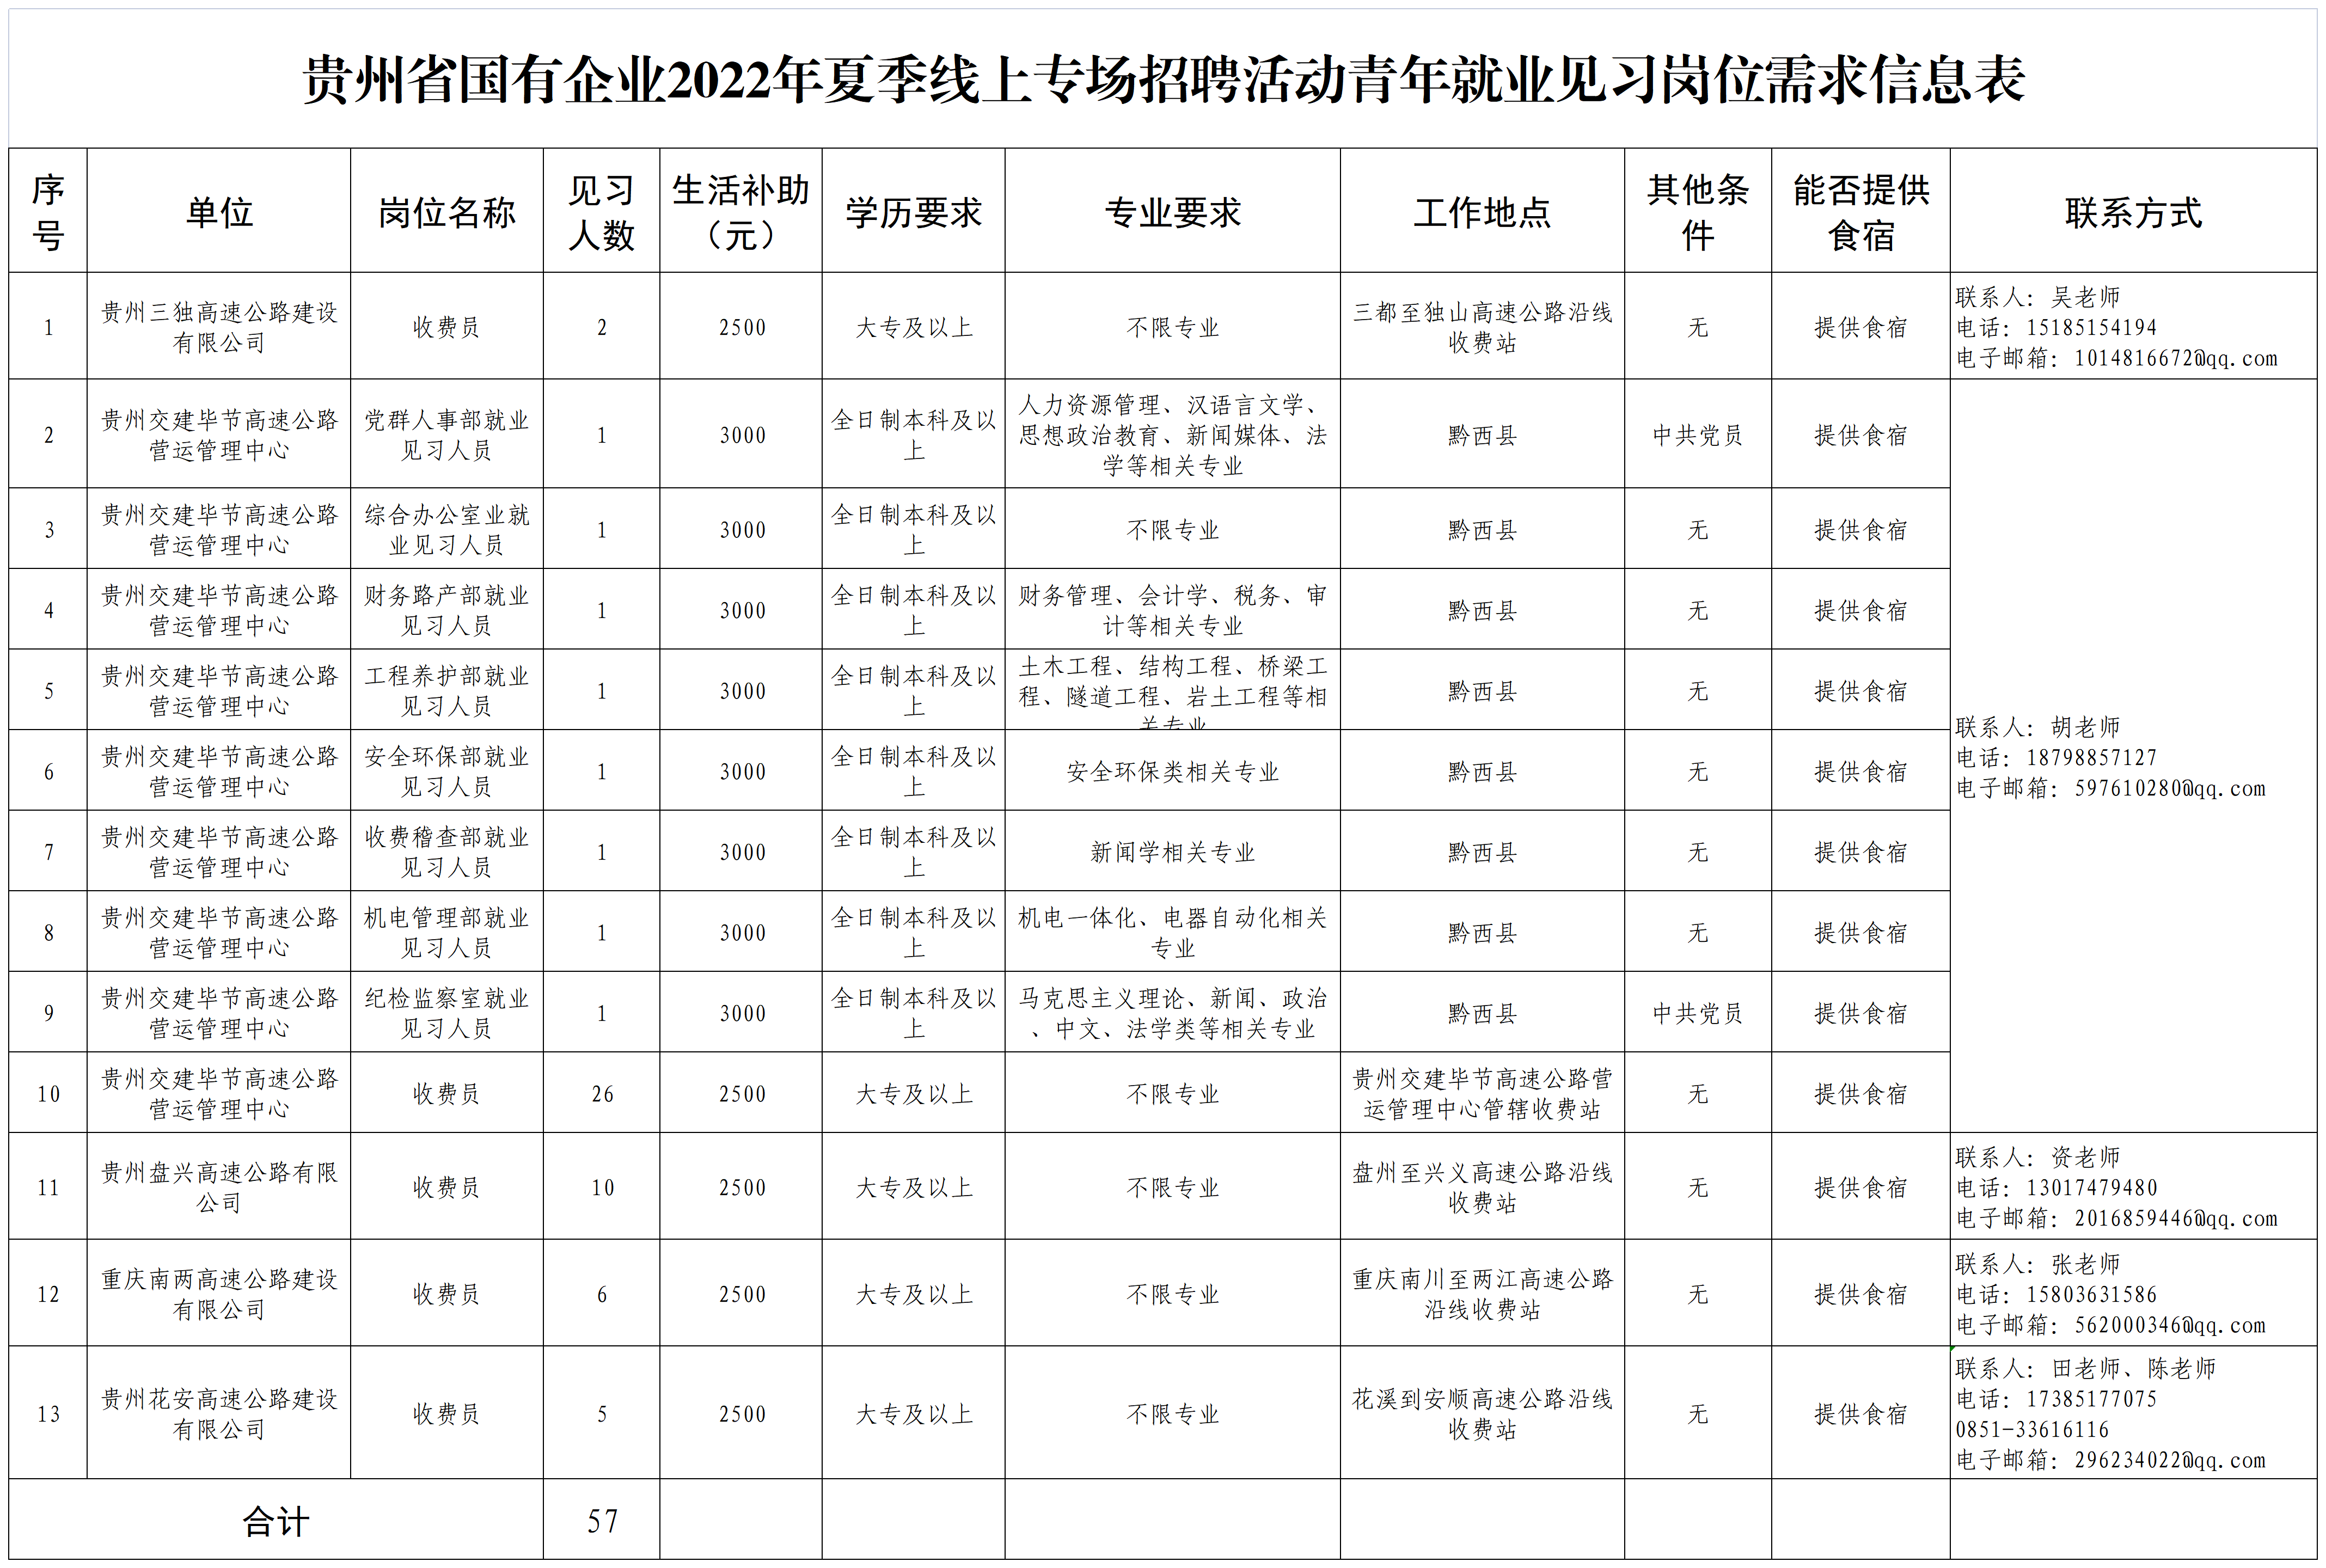 贵州省国有企业2022年夏季线上专场招聘活动青年就业见习岗位需求信息表_A1K16.png